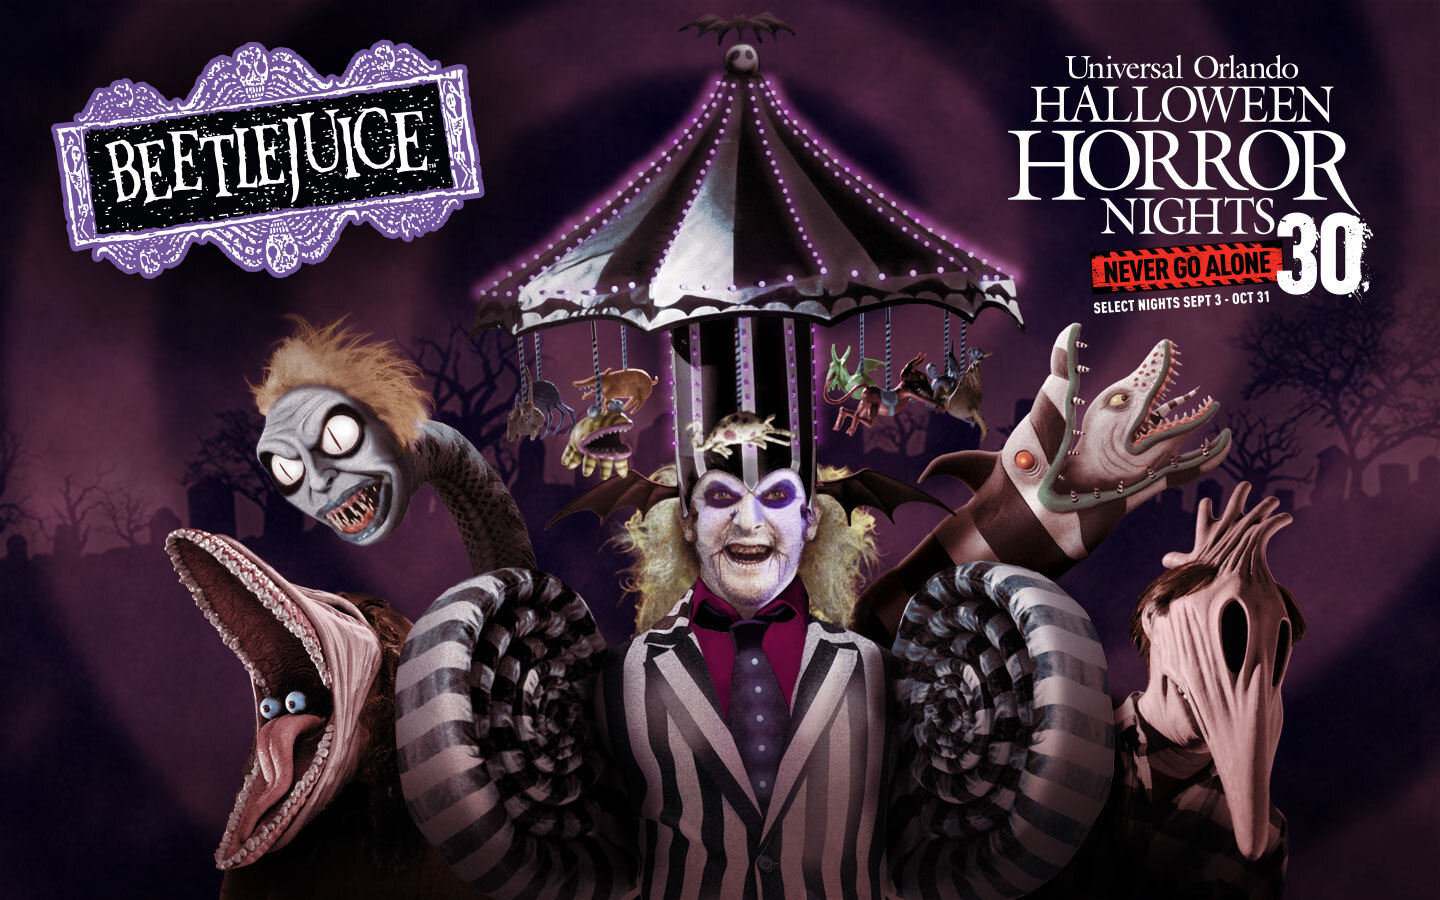 Beetlejuice anunciado para Halloween Horror Nights 2021